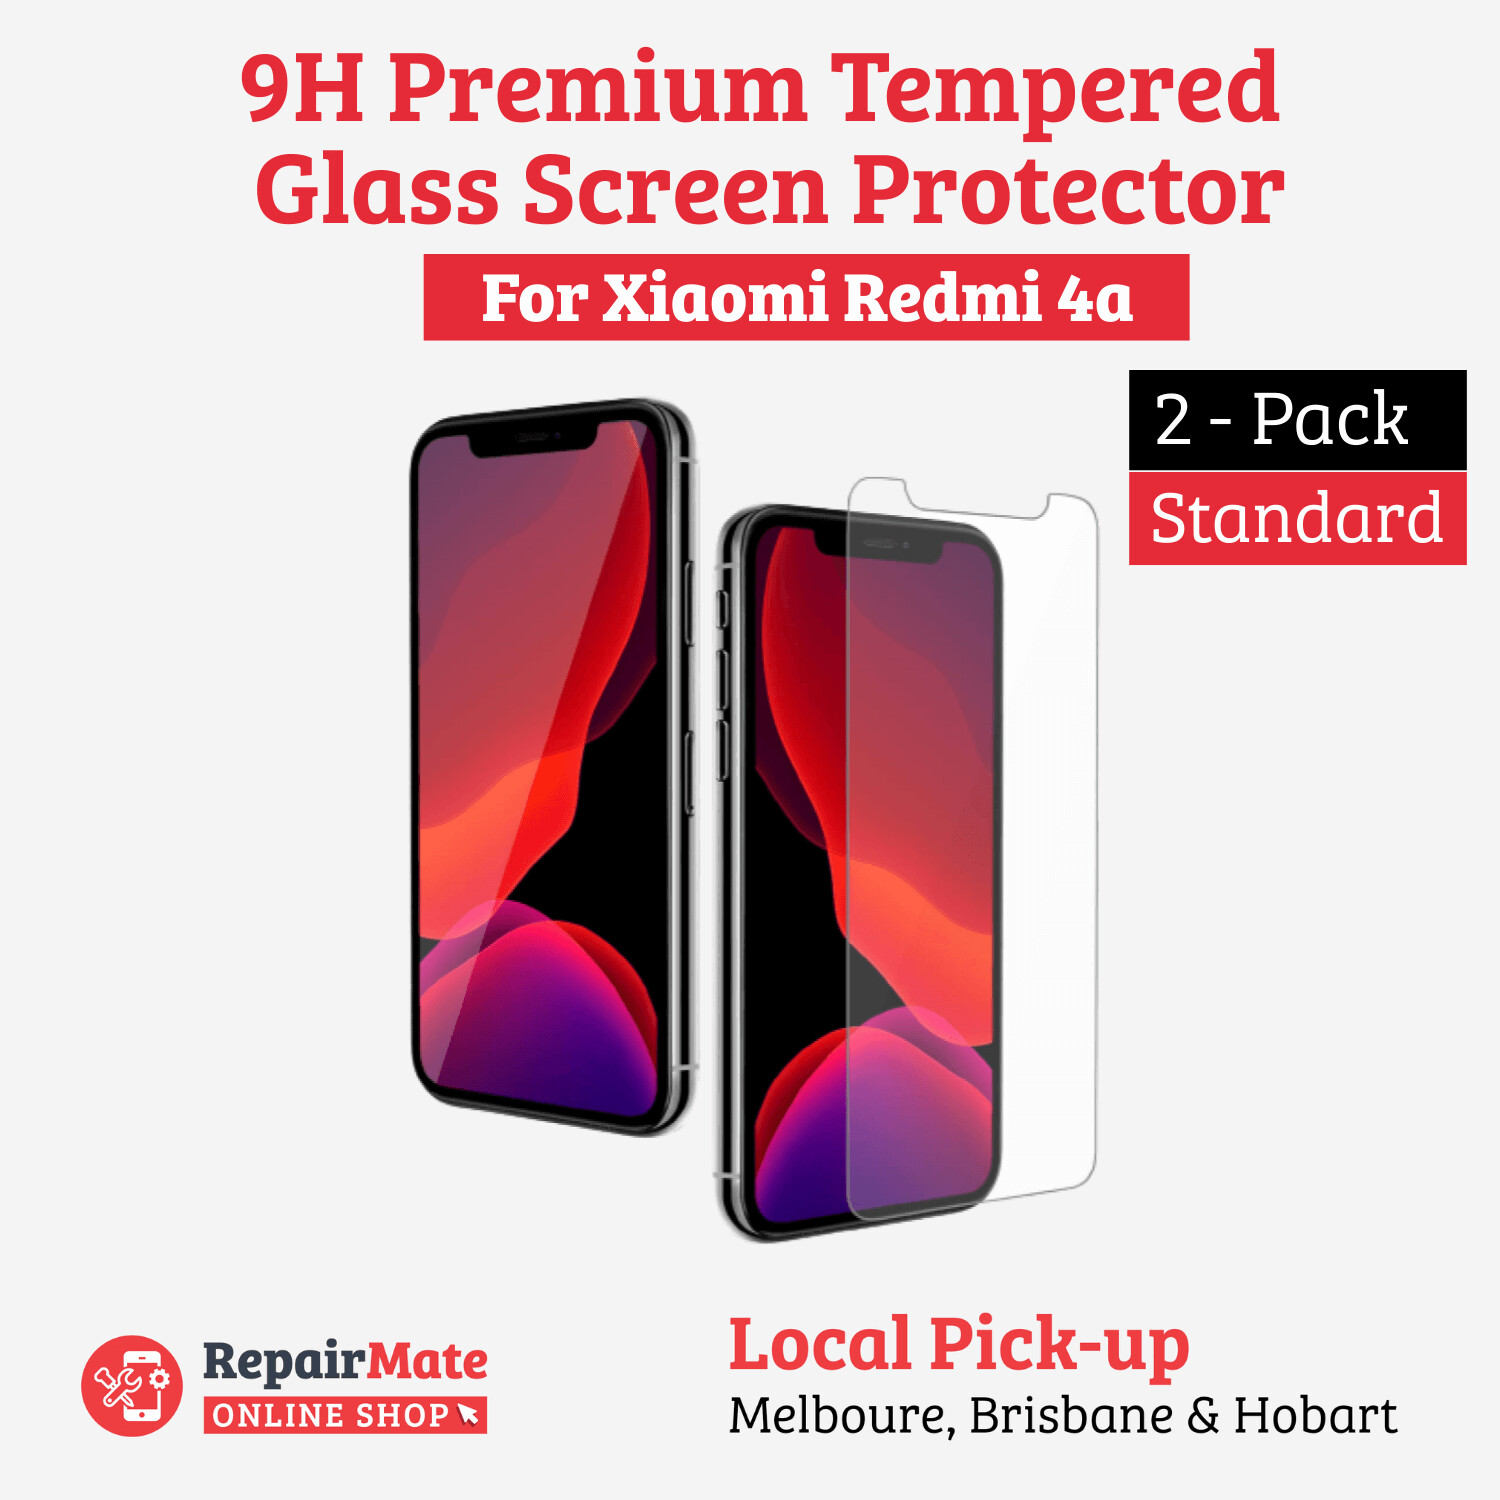 Xiaomi Redmi 4a 9H Premium Tempered Glass Screen Protector [2 Pack]